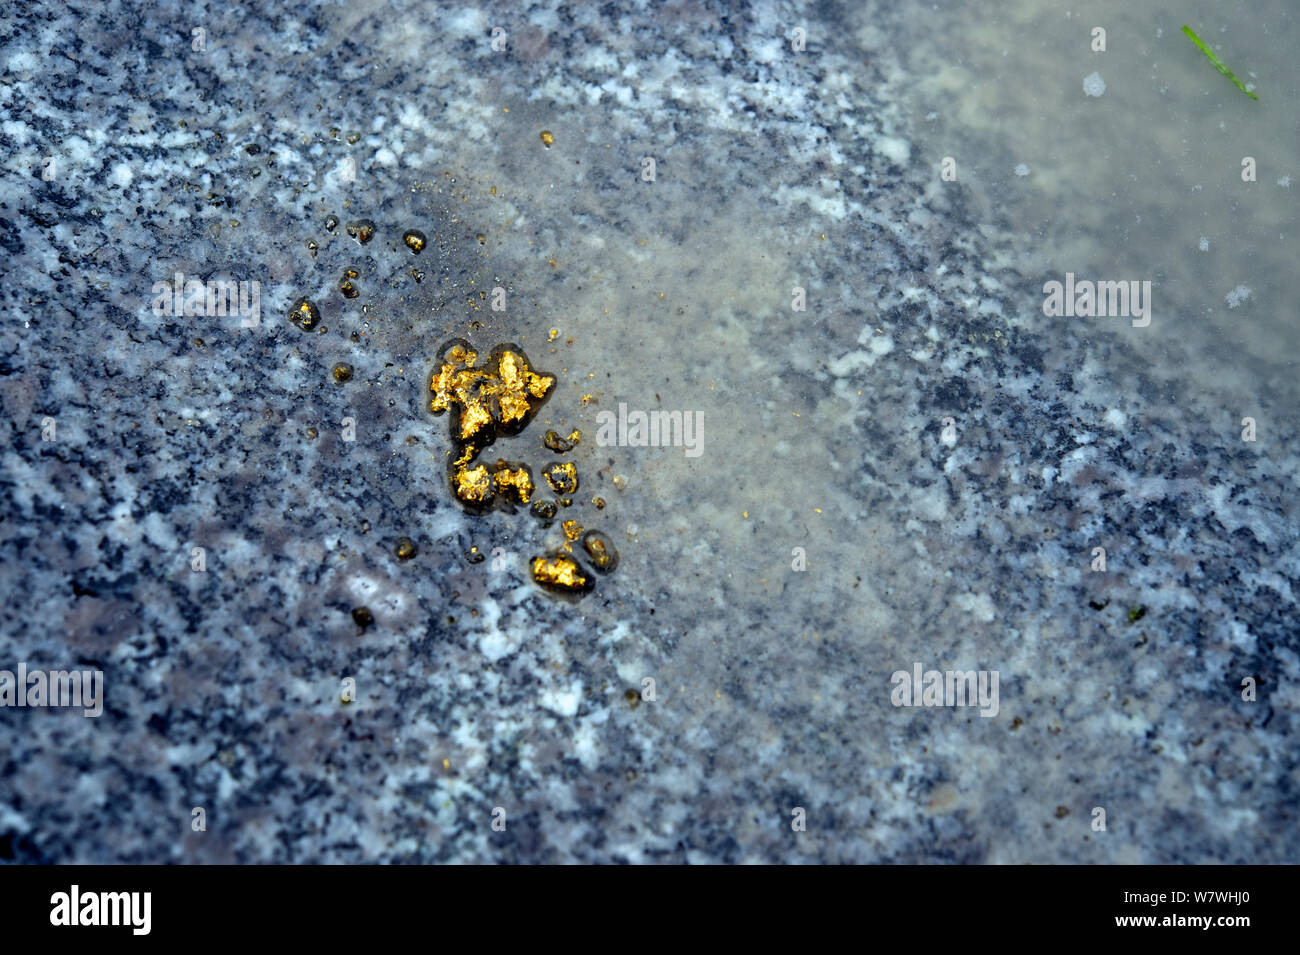 Oro extraído de arena utilizando mercurio, Totora, Andes, Bolivia, noviembre de 2013. Foto de stock